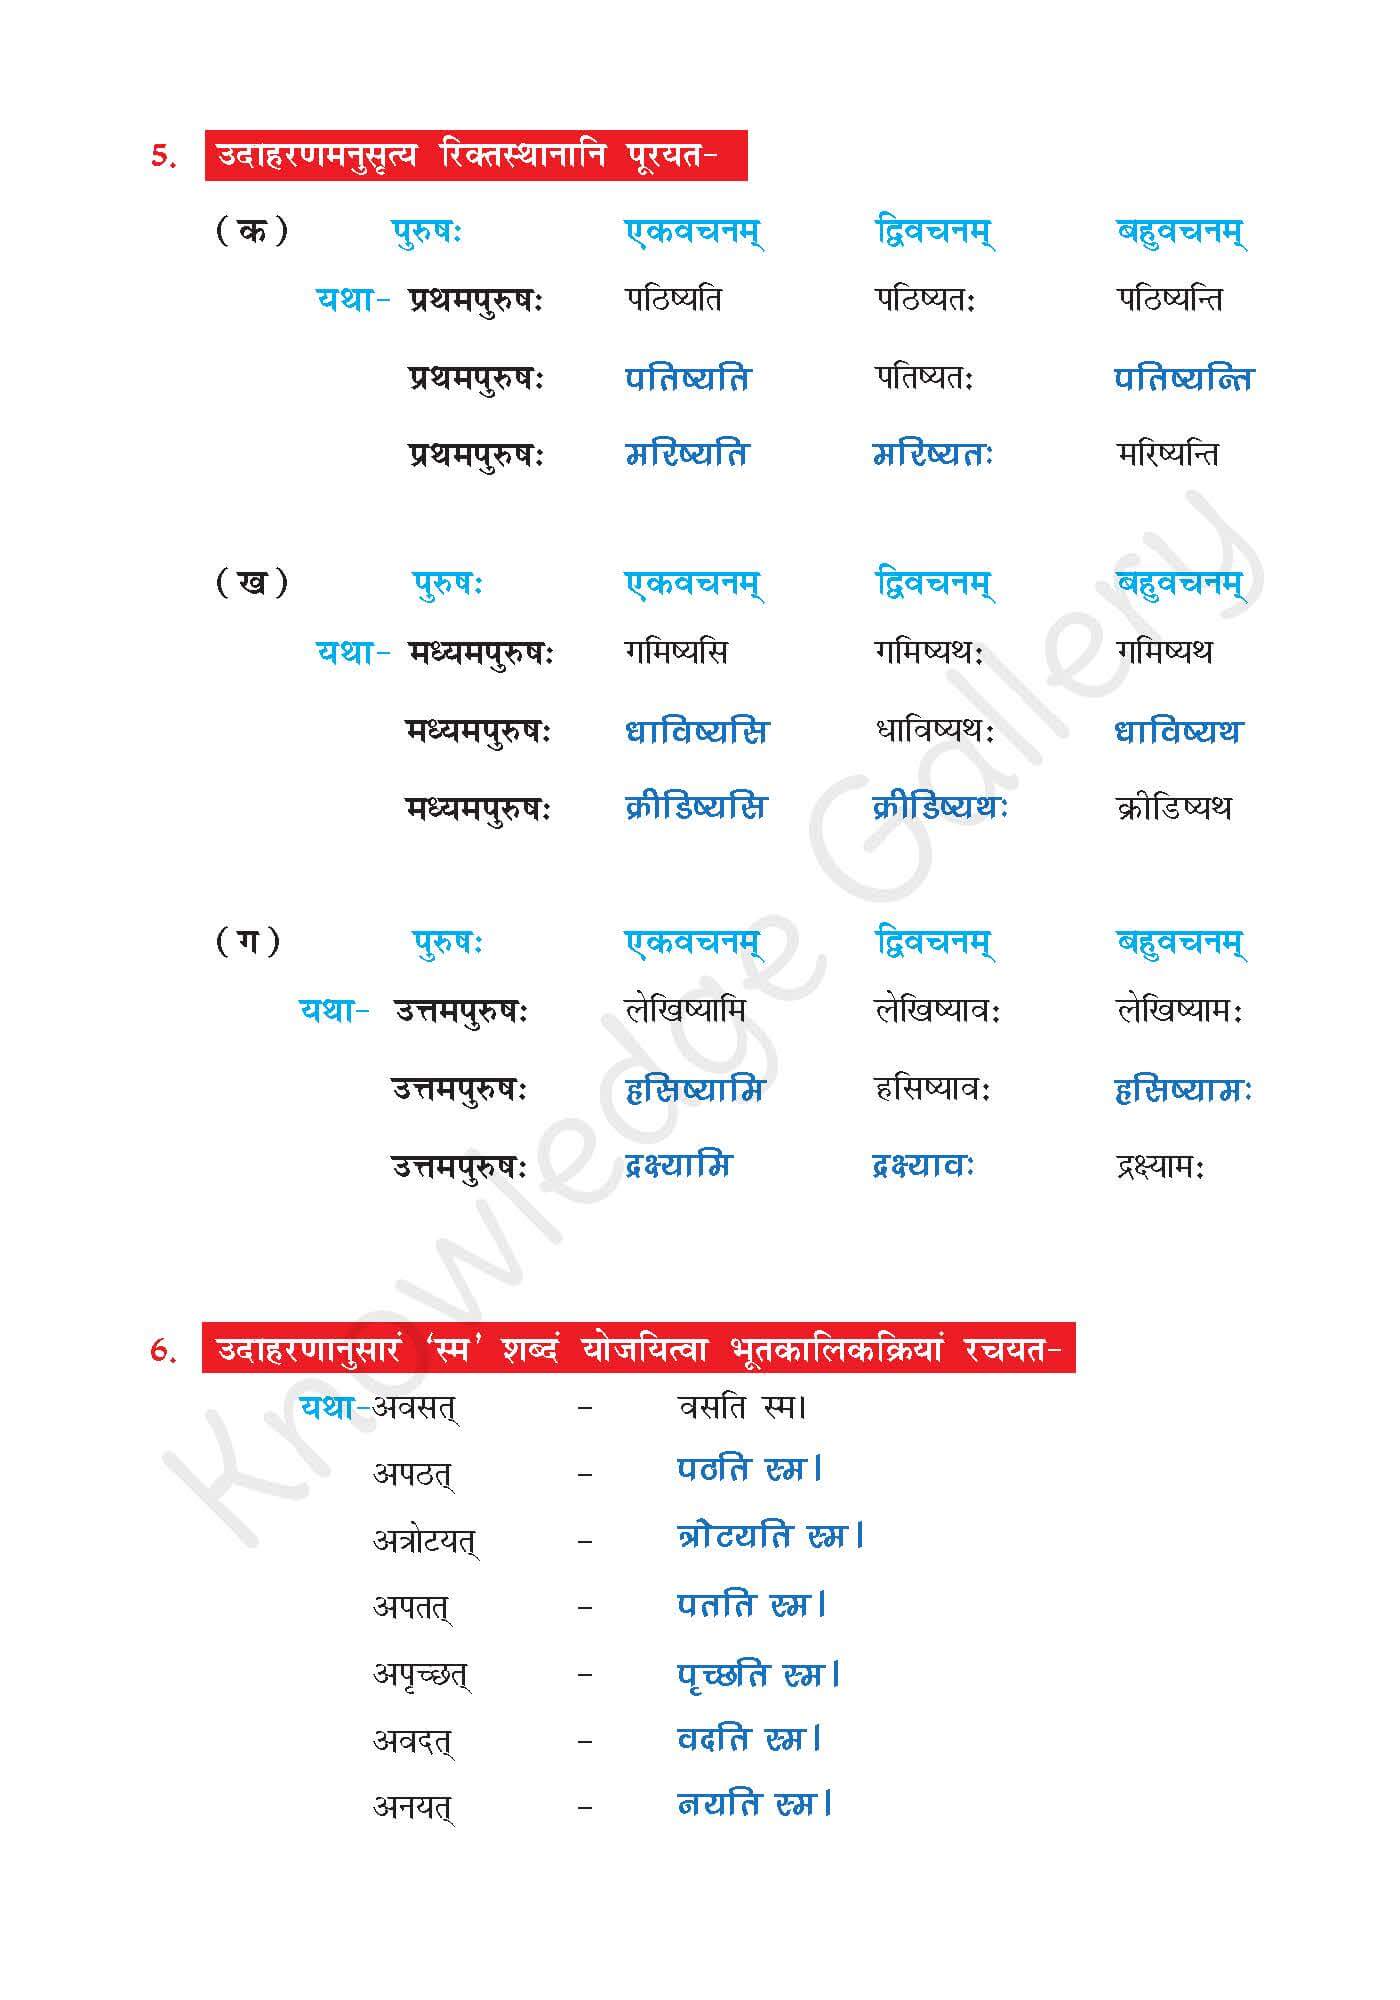 NCERT Solution For Class 7 Sanskrit Chapter 10 part 5